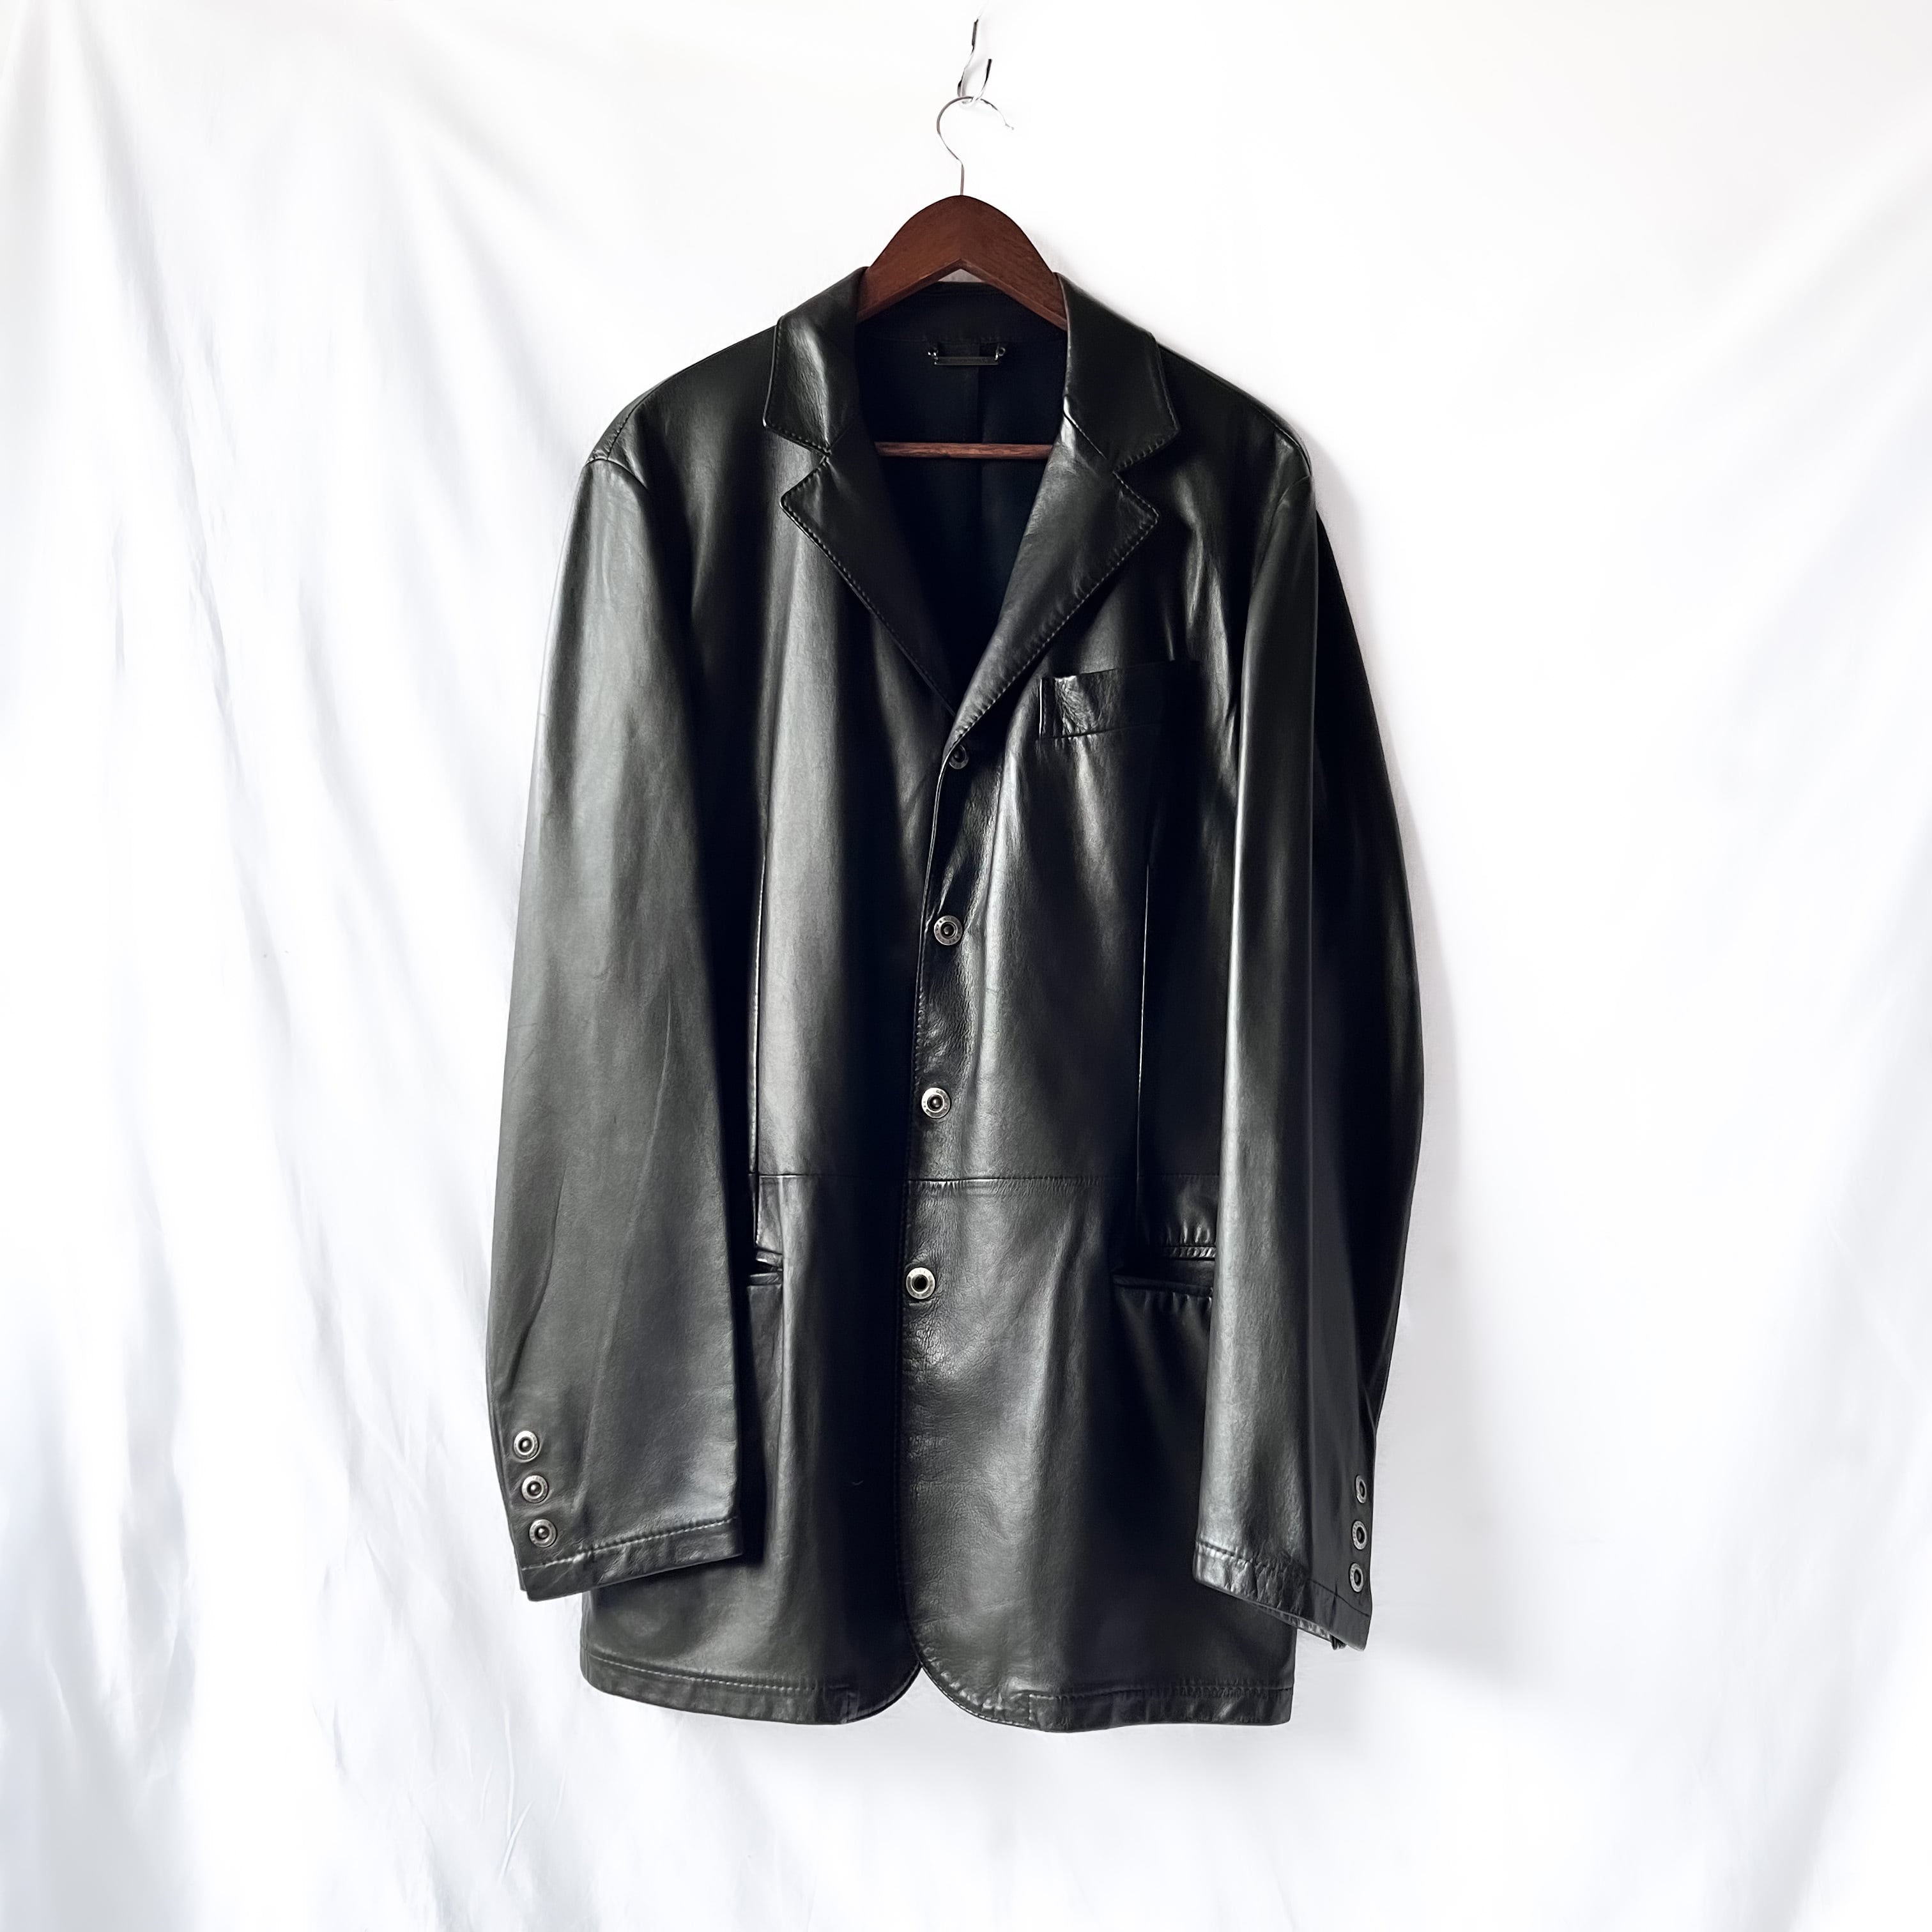 〔最高峰〕Vintage 90s Sheep leather coat